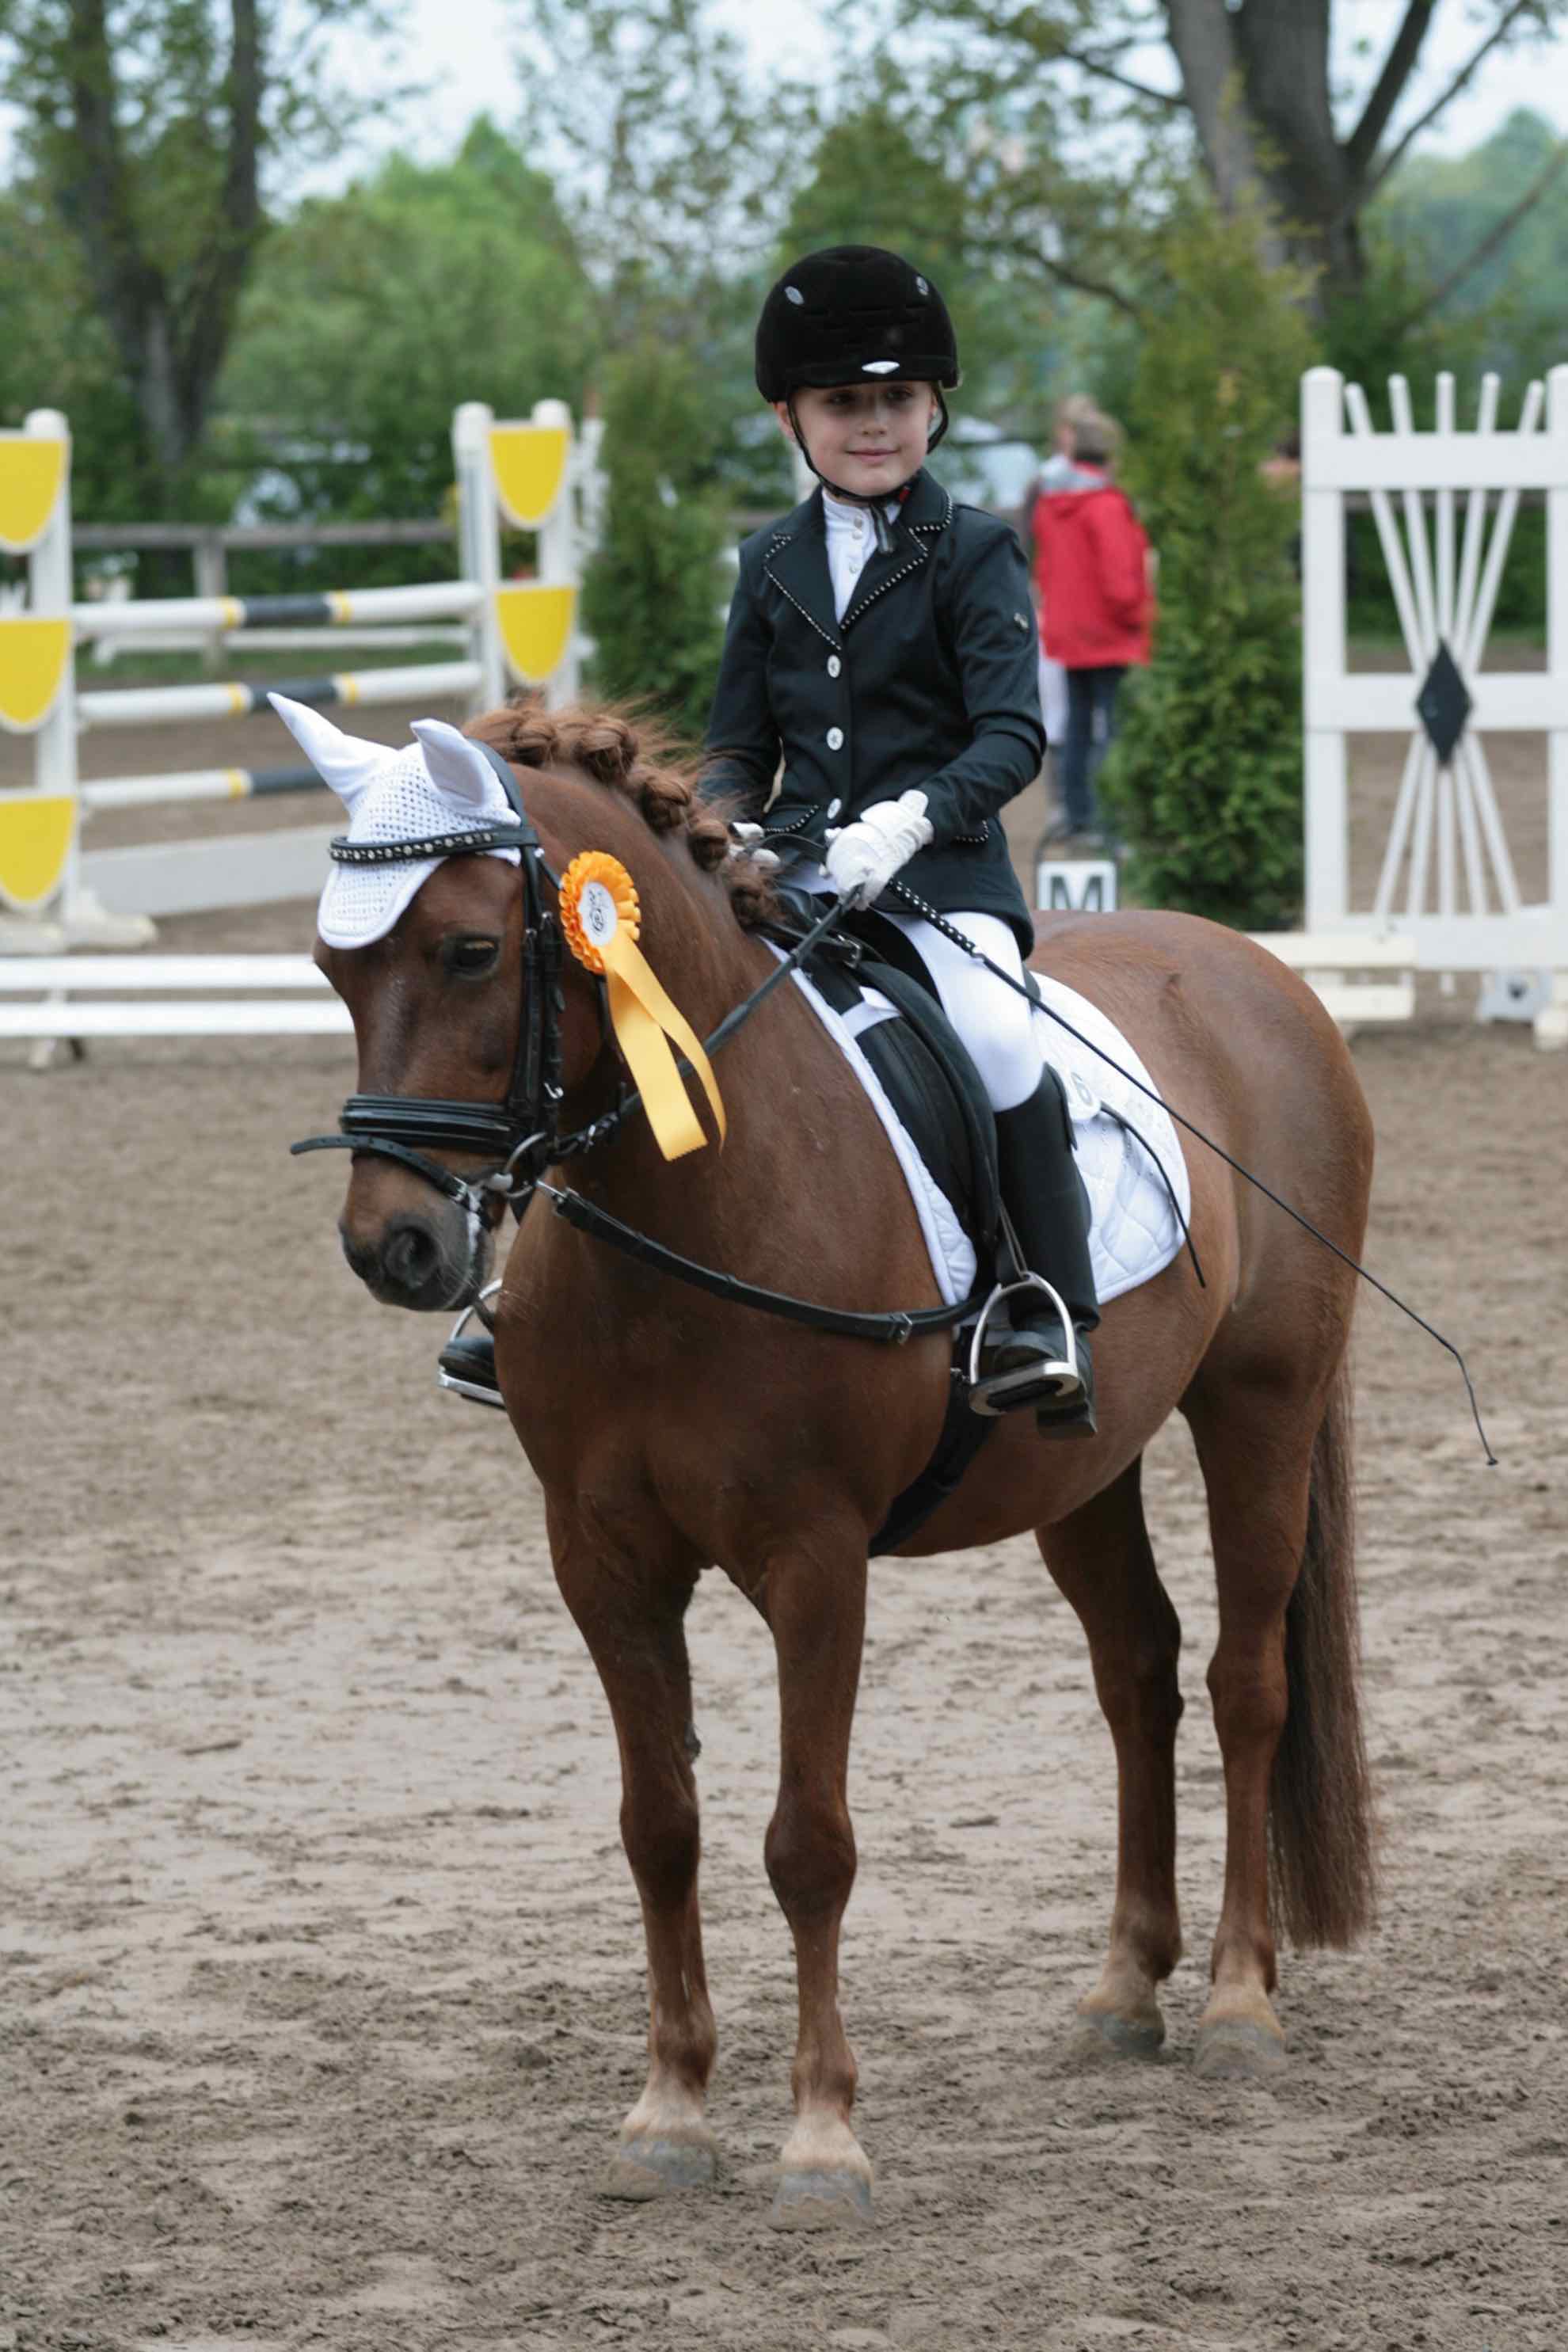 Prüfung 28/3 Reiterwettbewerb für Ponys - 1. Platz - Yara Nowka auf Zeus 77 - RFV Trebur e.V.